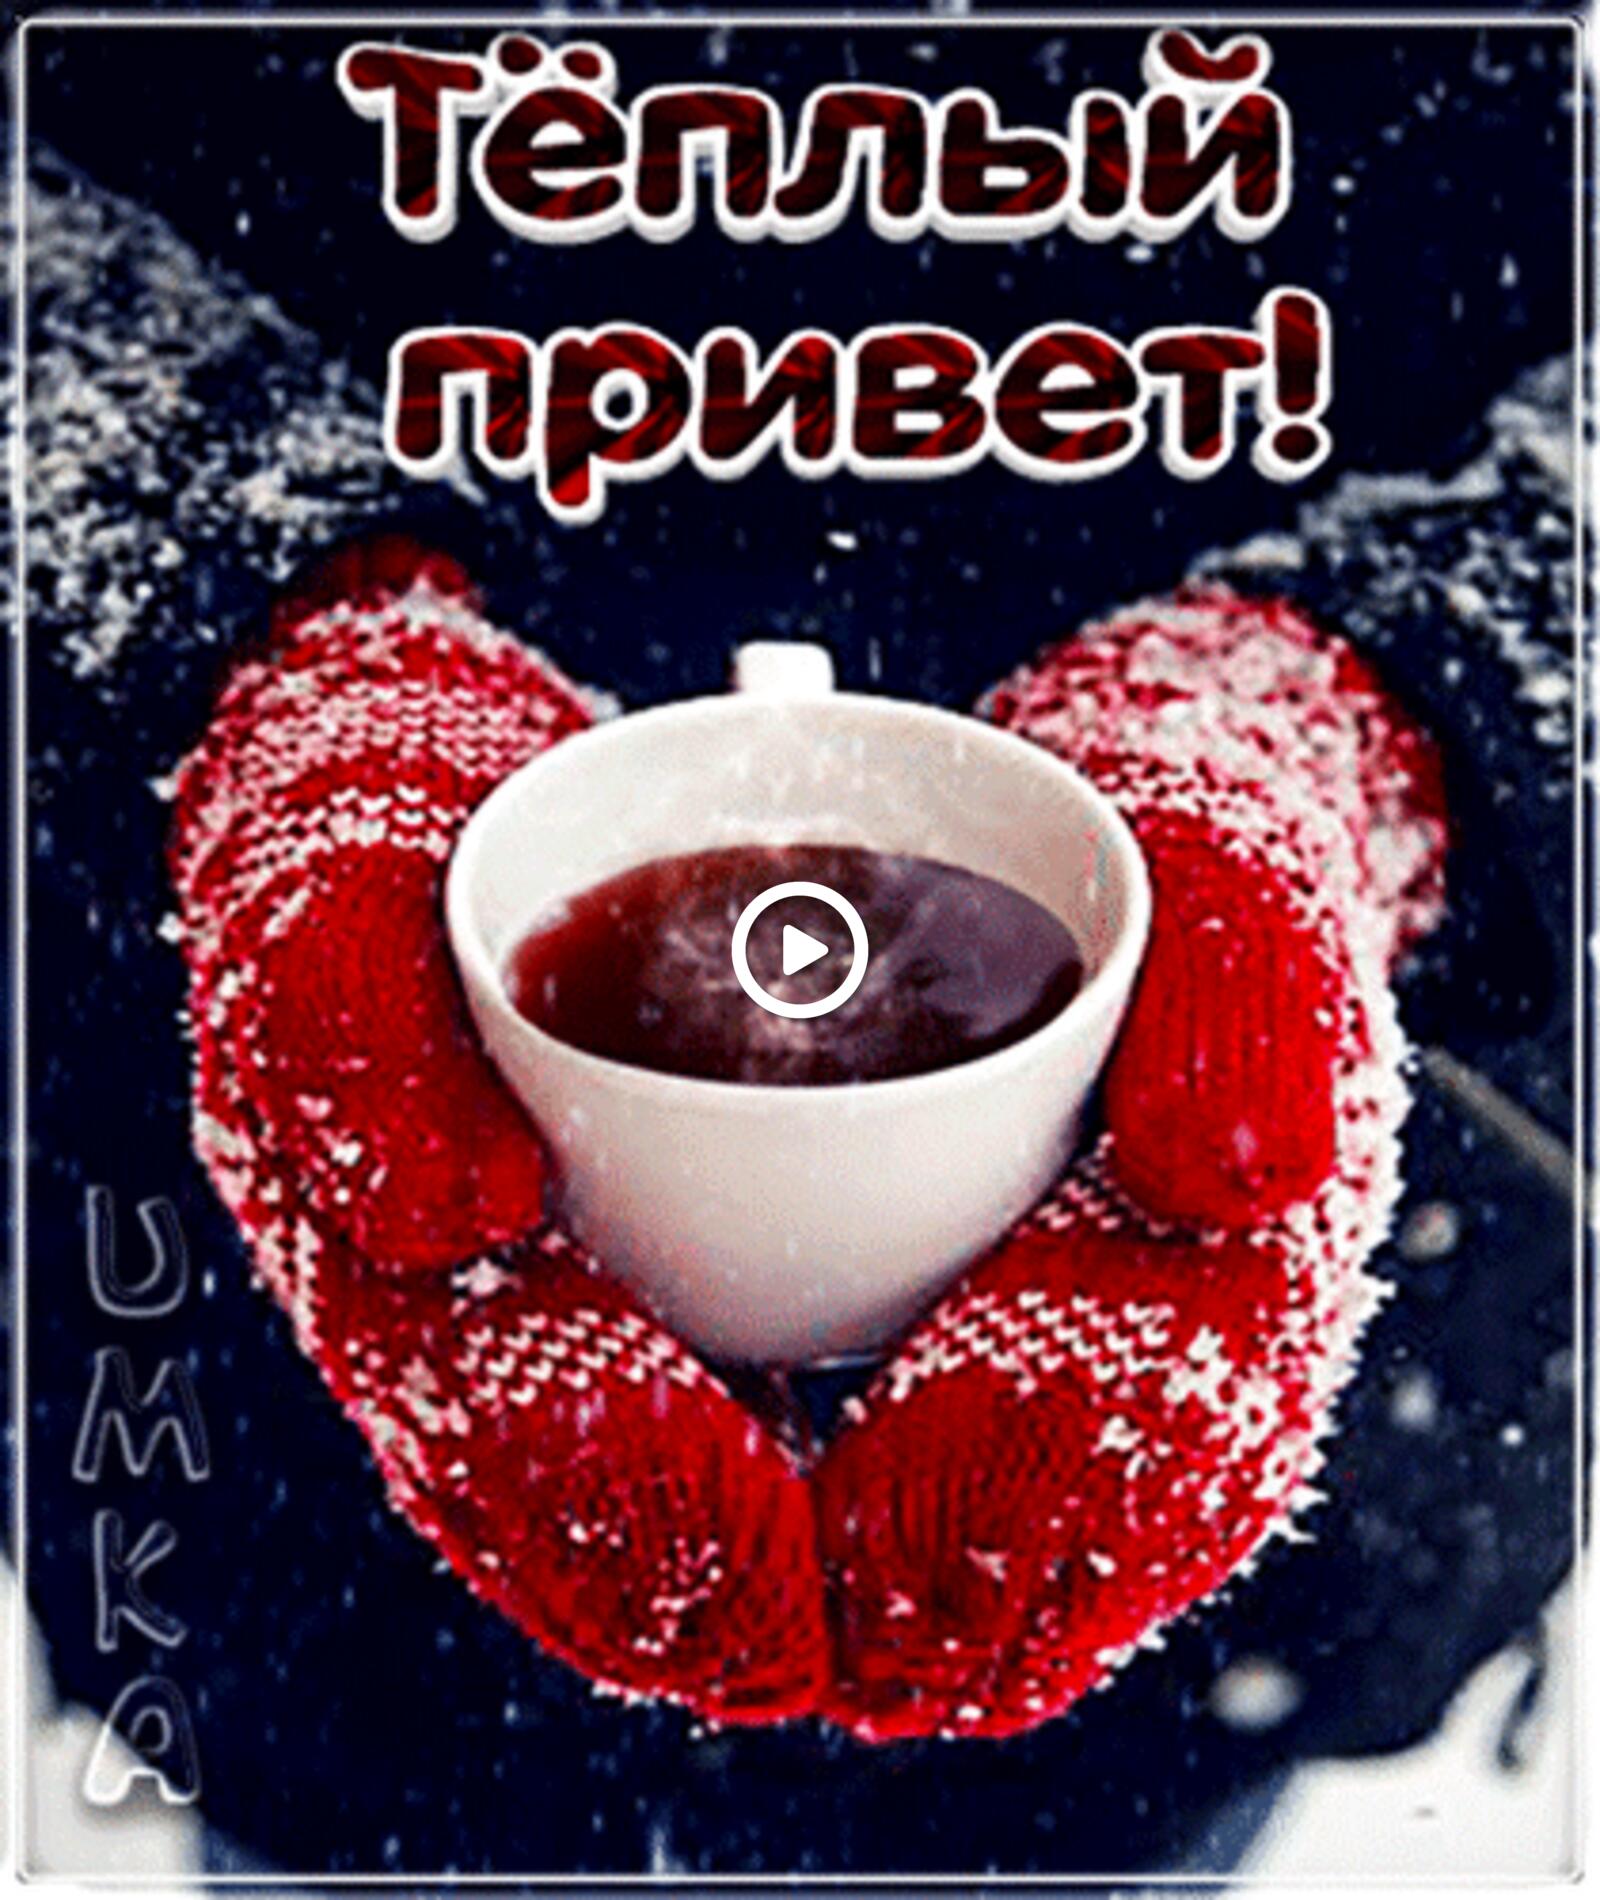 一张以你好 茶 冬季为主题的明信片